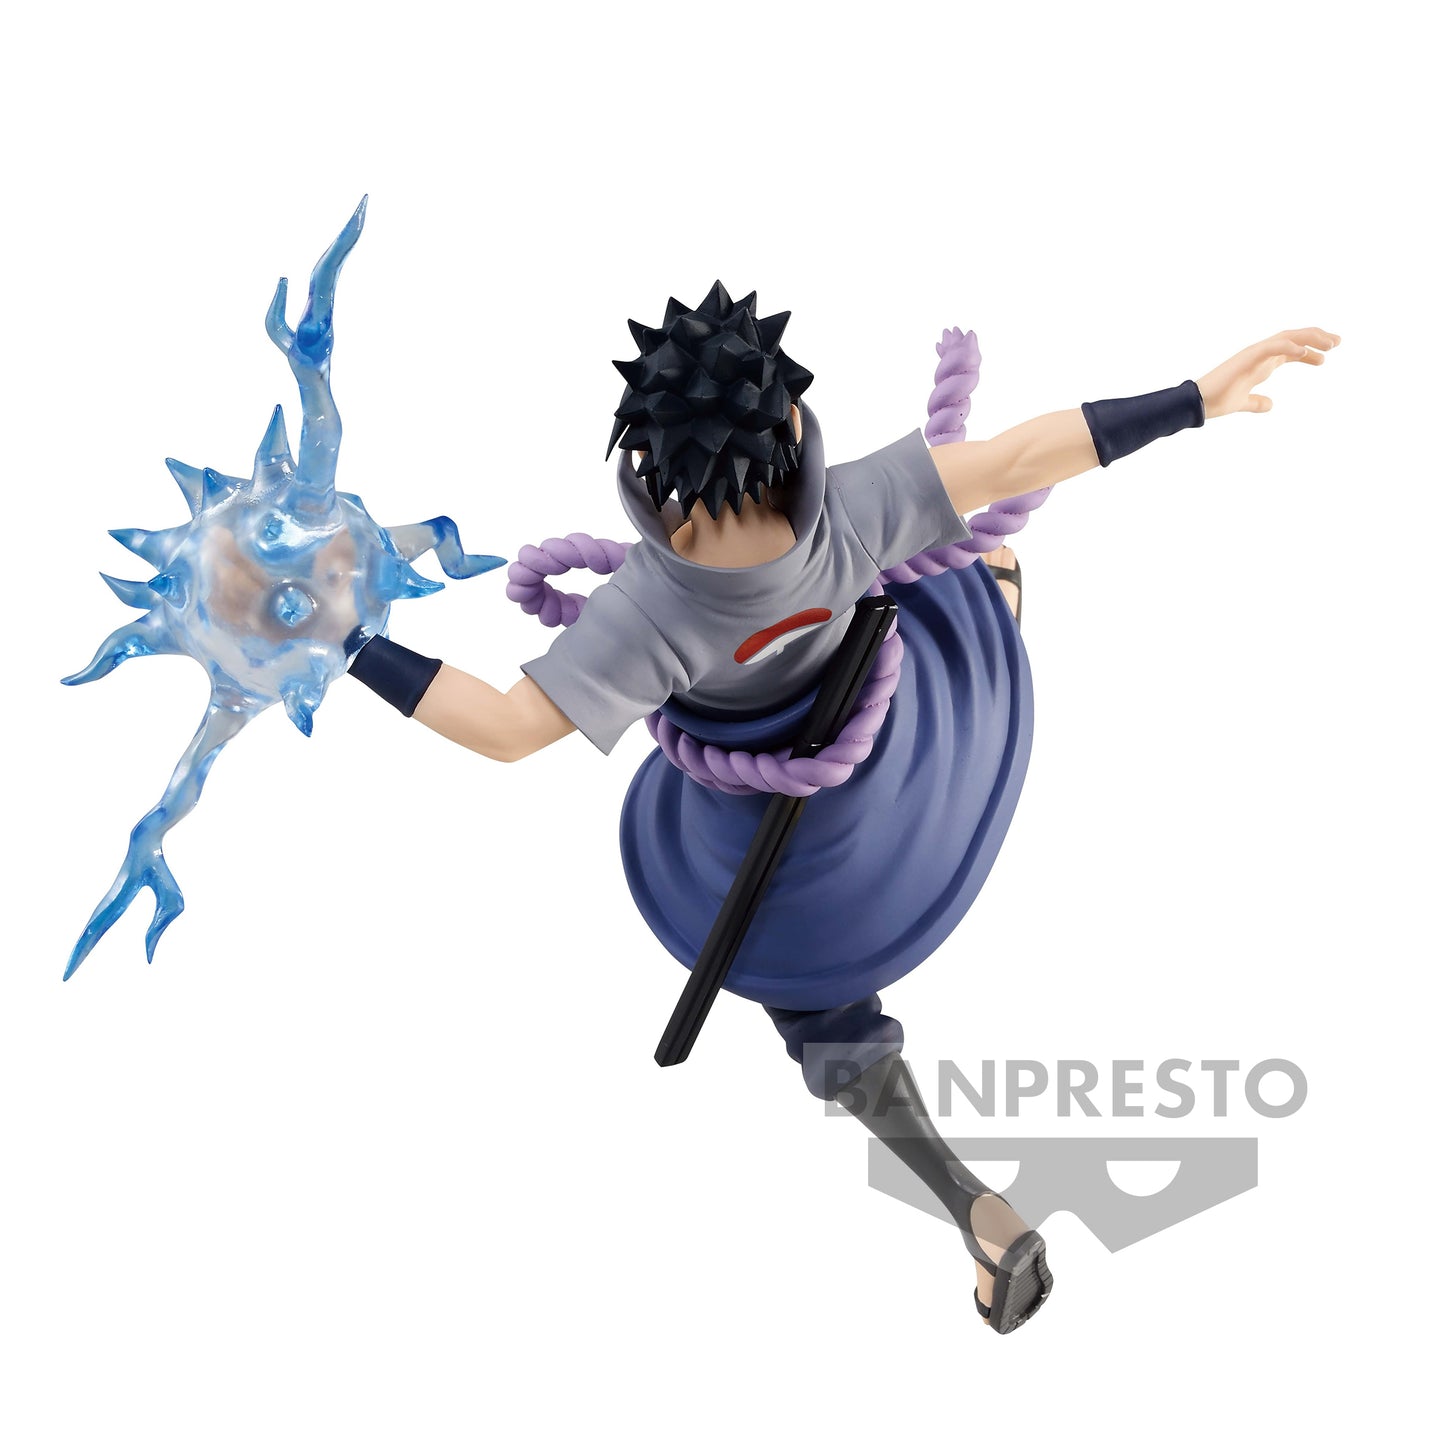 BANPRESTO Naruto: Shippuden Sasuke Uchiha Figure